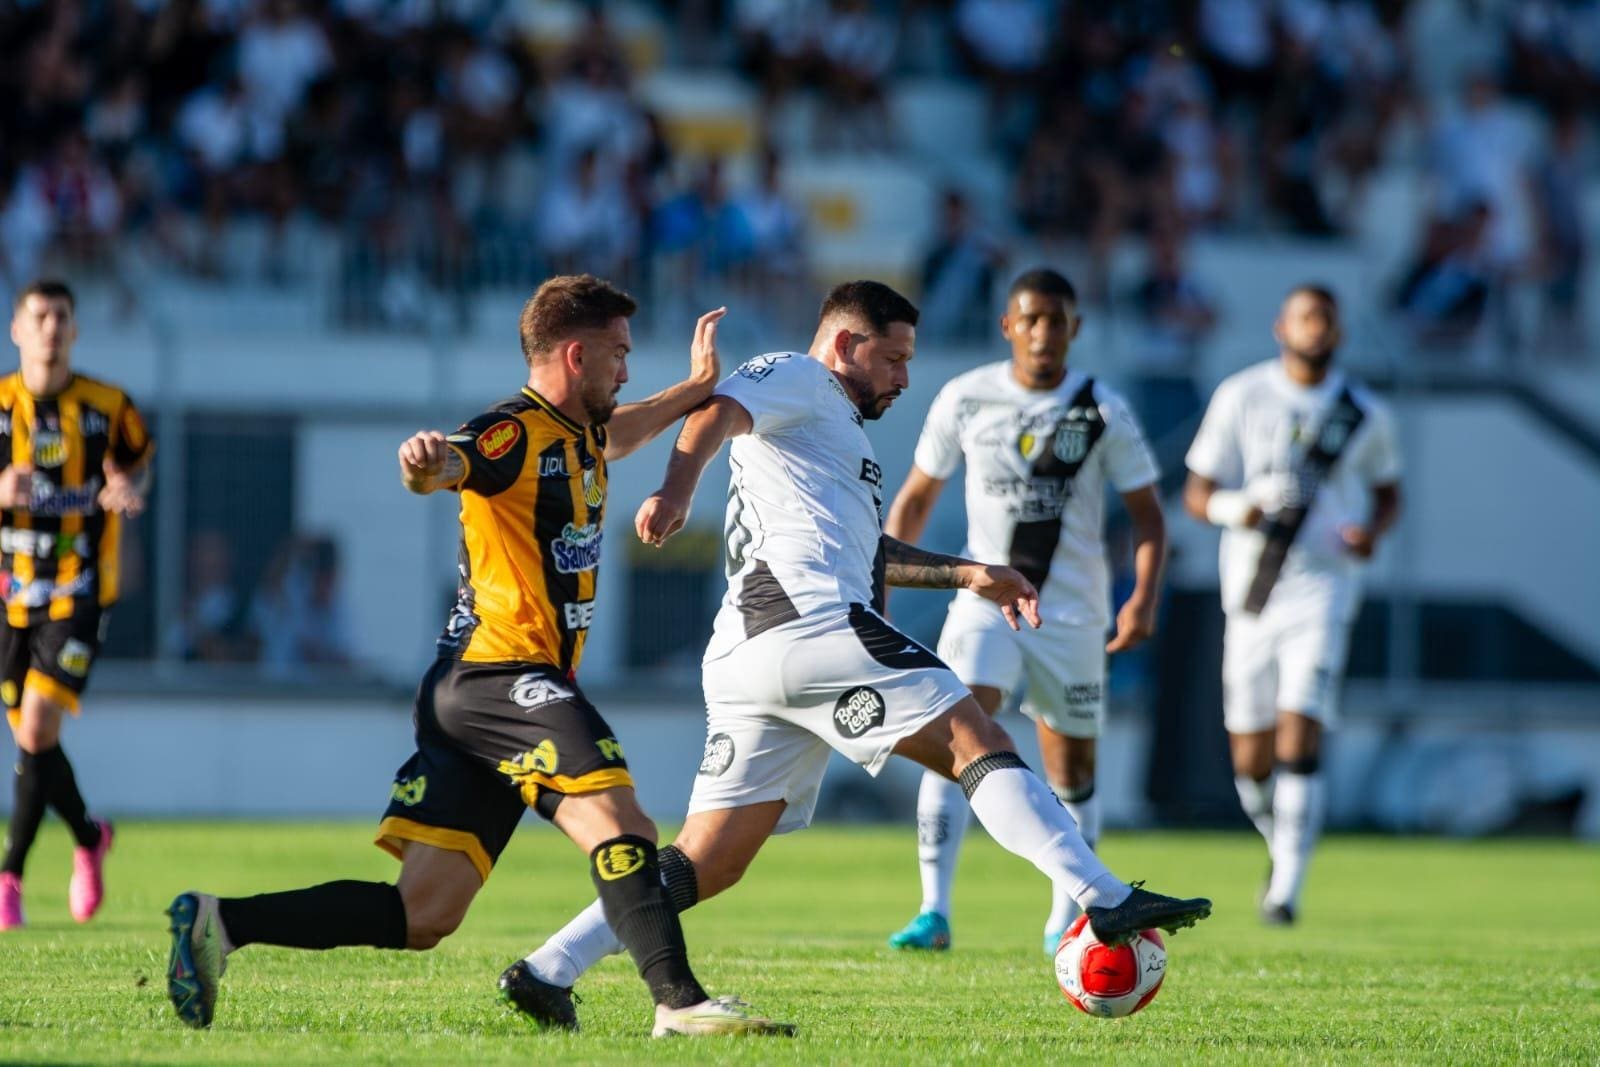 Ponte Preta empatou com o Novorizontino neste domingo (3), pelo placar de 1 a 1, em jogo válido pelo Campeonato Paulista, no Estádio Moisés Lucarelli